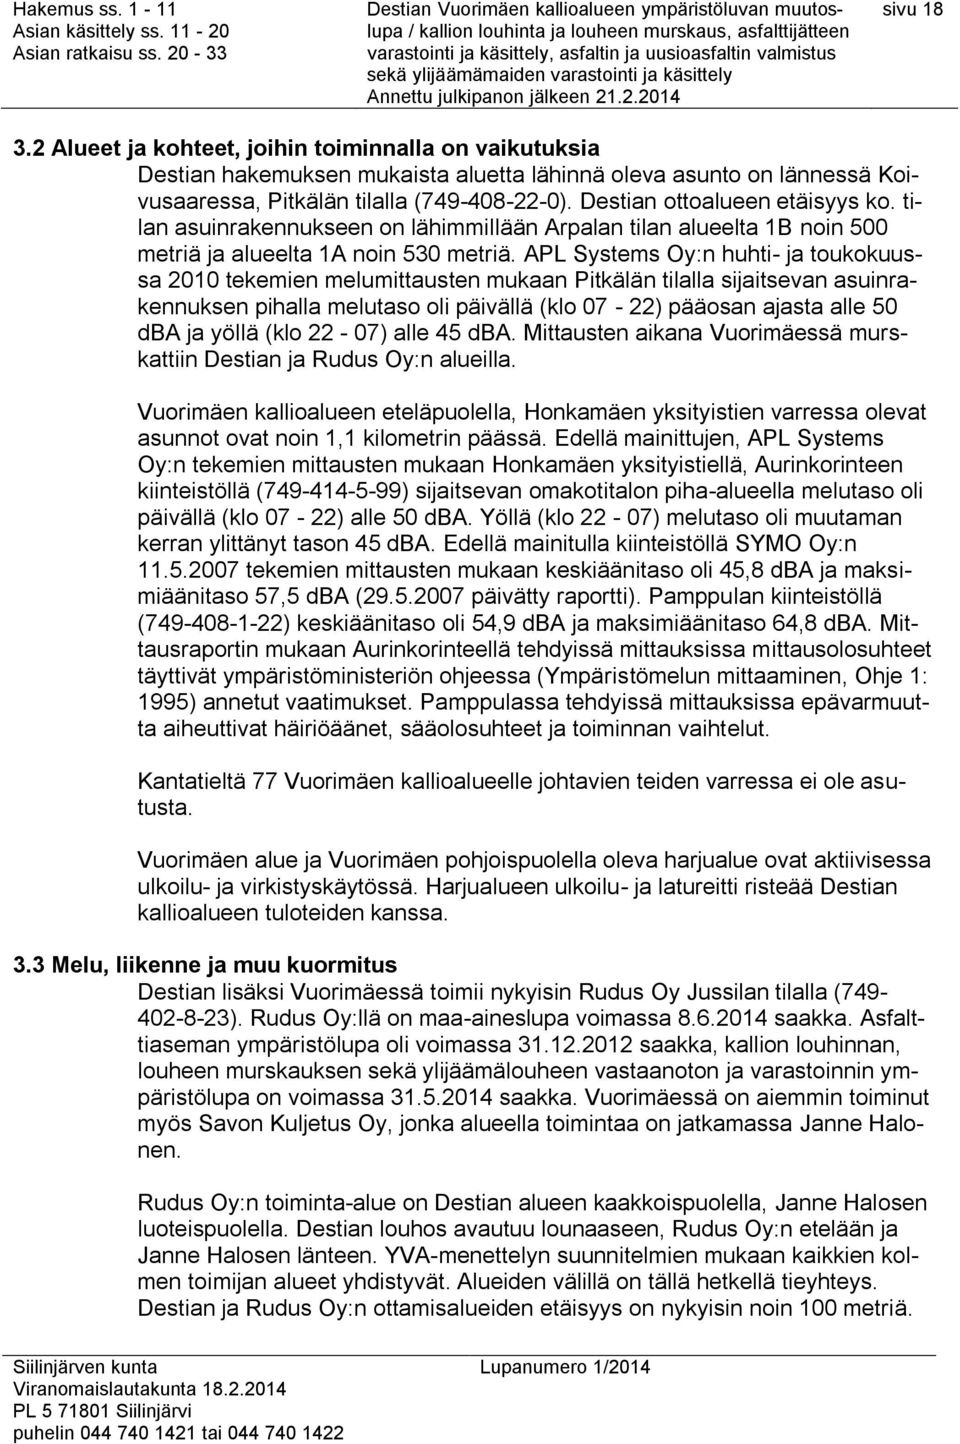 APL Systems Oy:n huhti- ja toukokuussa 2010 tekemien melumittausten mukaan Pitkälän tilalla sijaitsevan asuinrakennuksen pihalla melutaso oli päivällä (klo 07-22) pääosan ajasta alle 50 dba ja yöllä